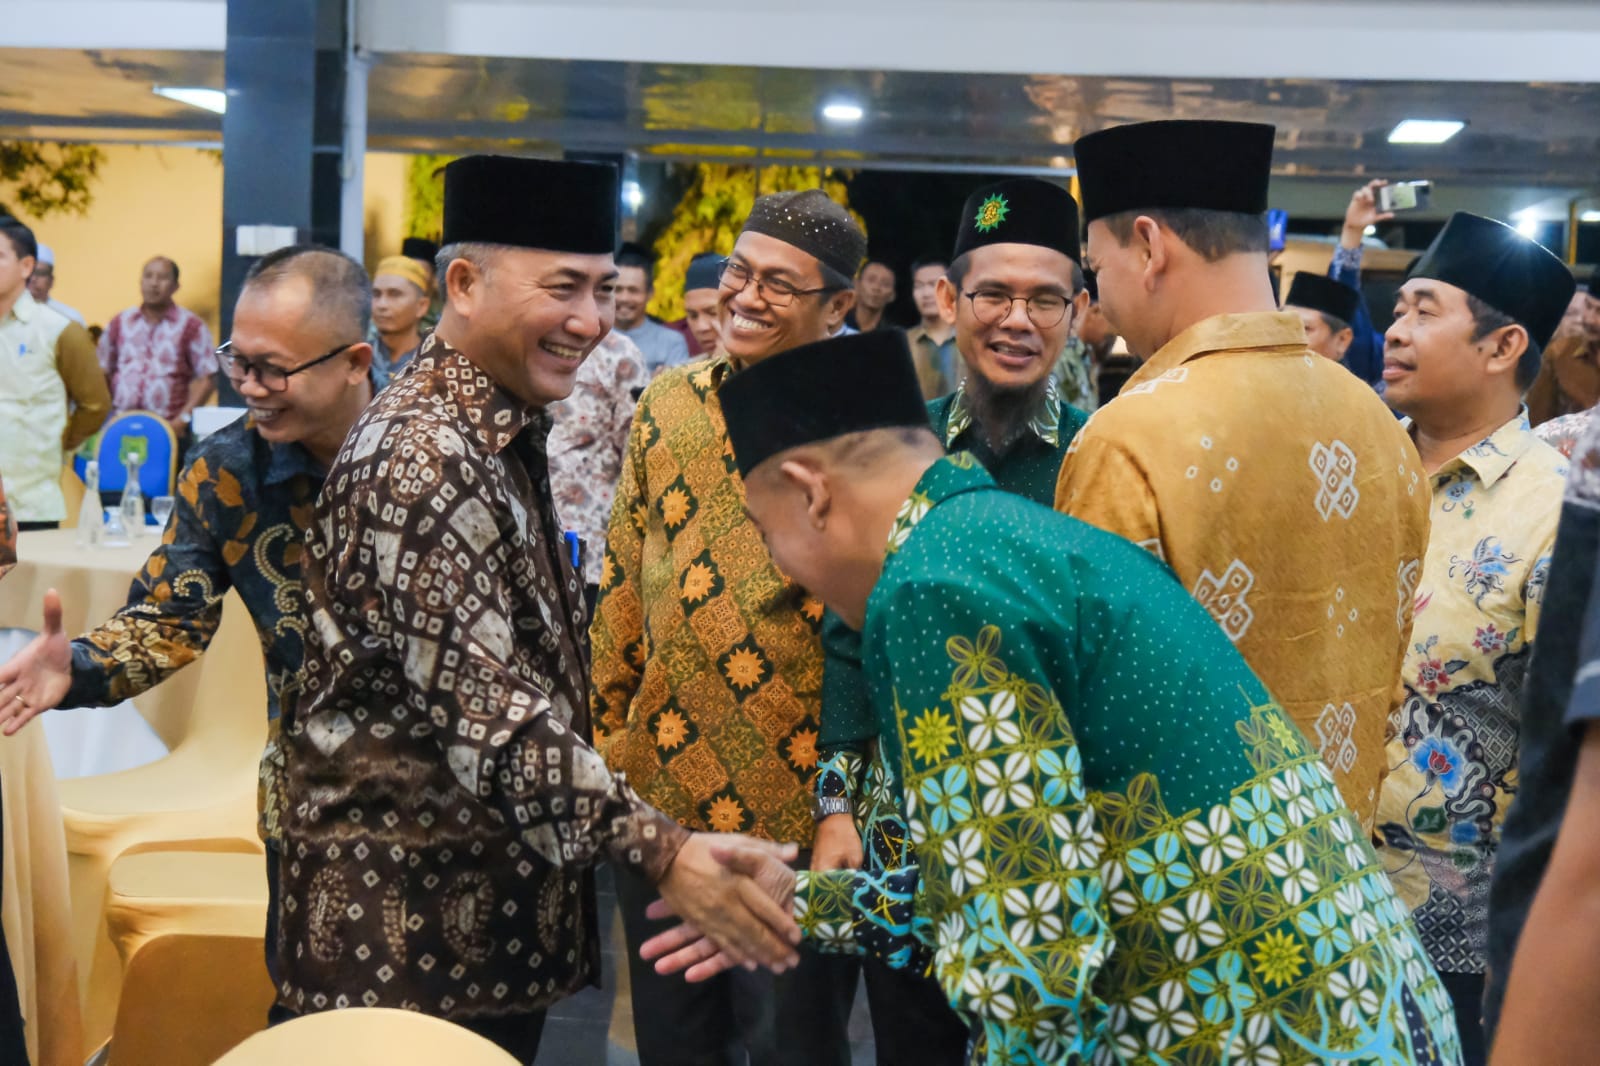 Pj Bupati Apriyadi Apresiasi Kontribusi Muhammadiyah Tingkatkan Kualitas SDM Muba